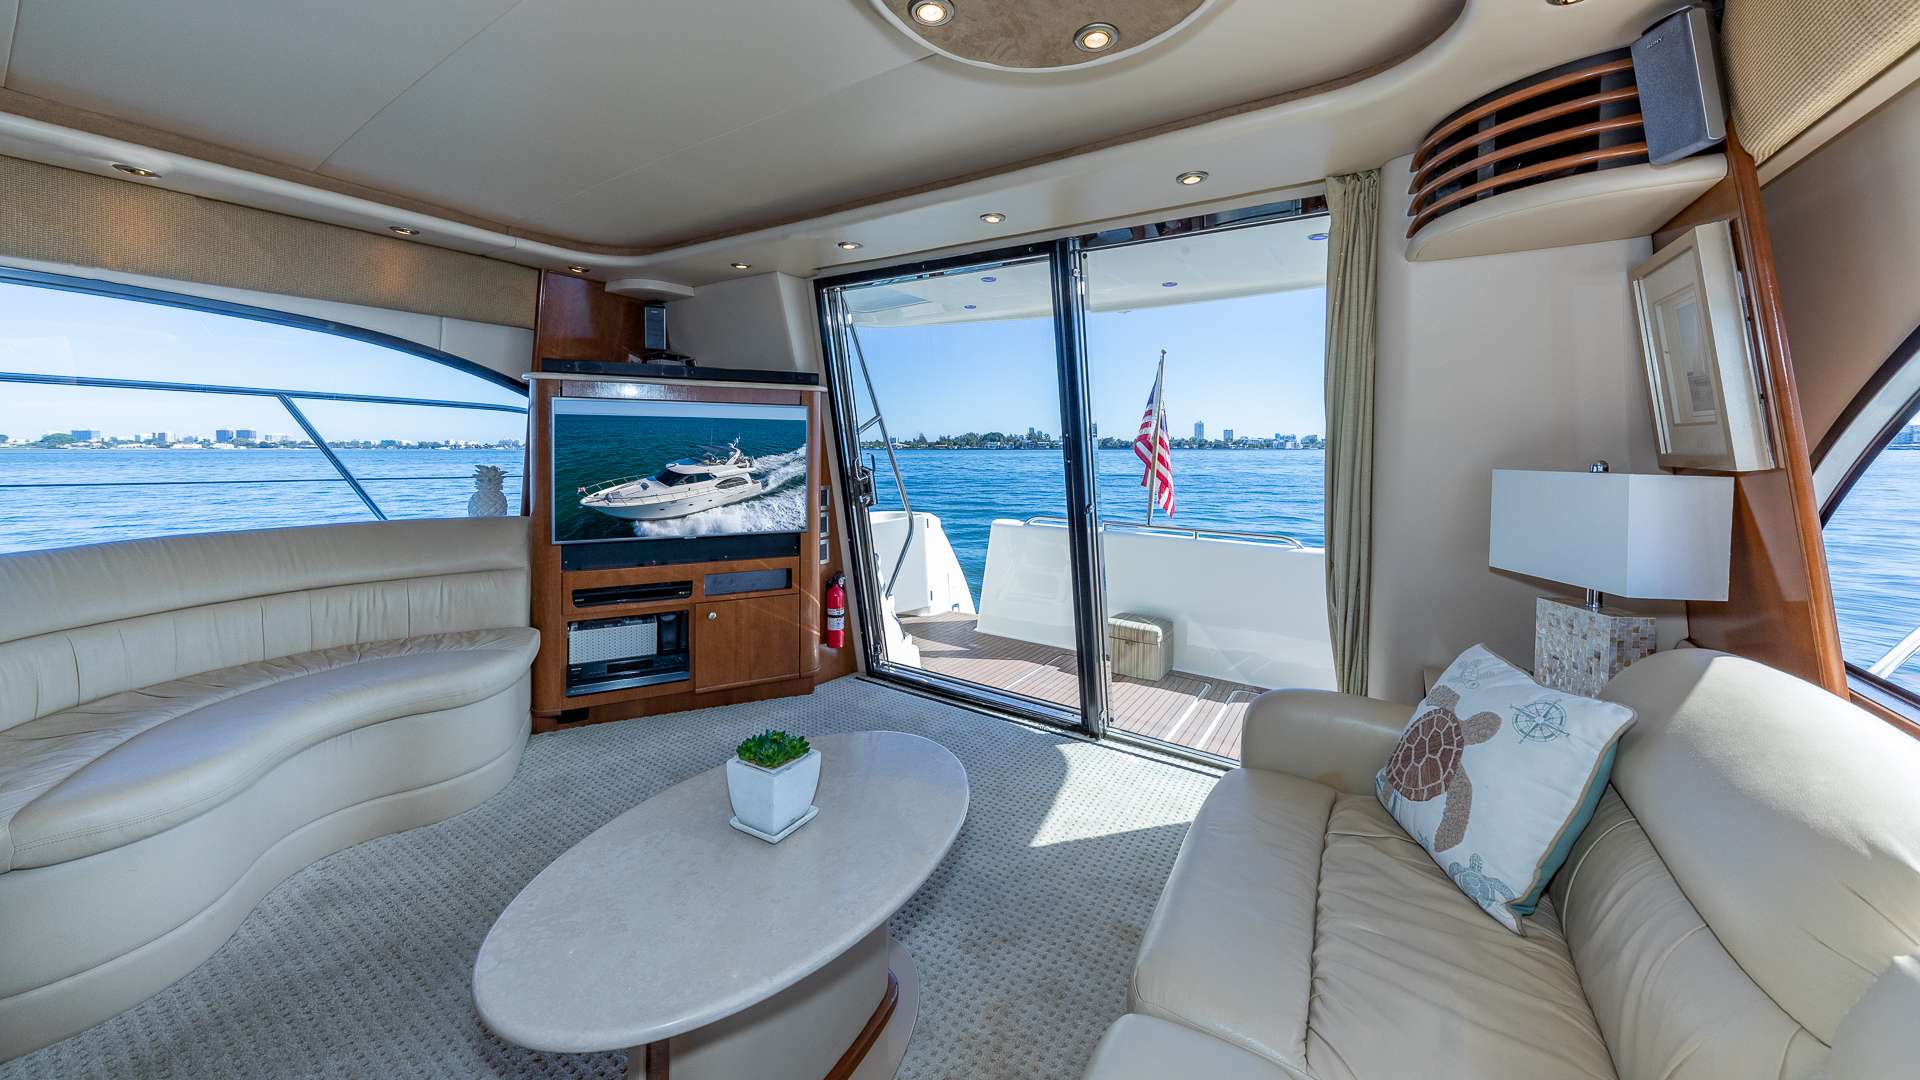 ELEGANT LADY - Luxury yacht charter Bahamas & Boat hire in Florida & Bahamas 2